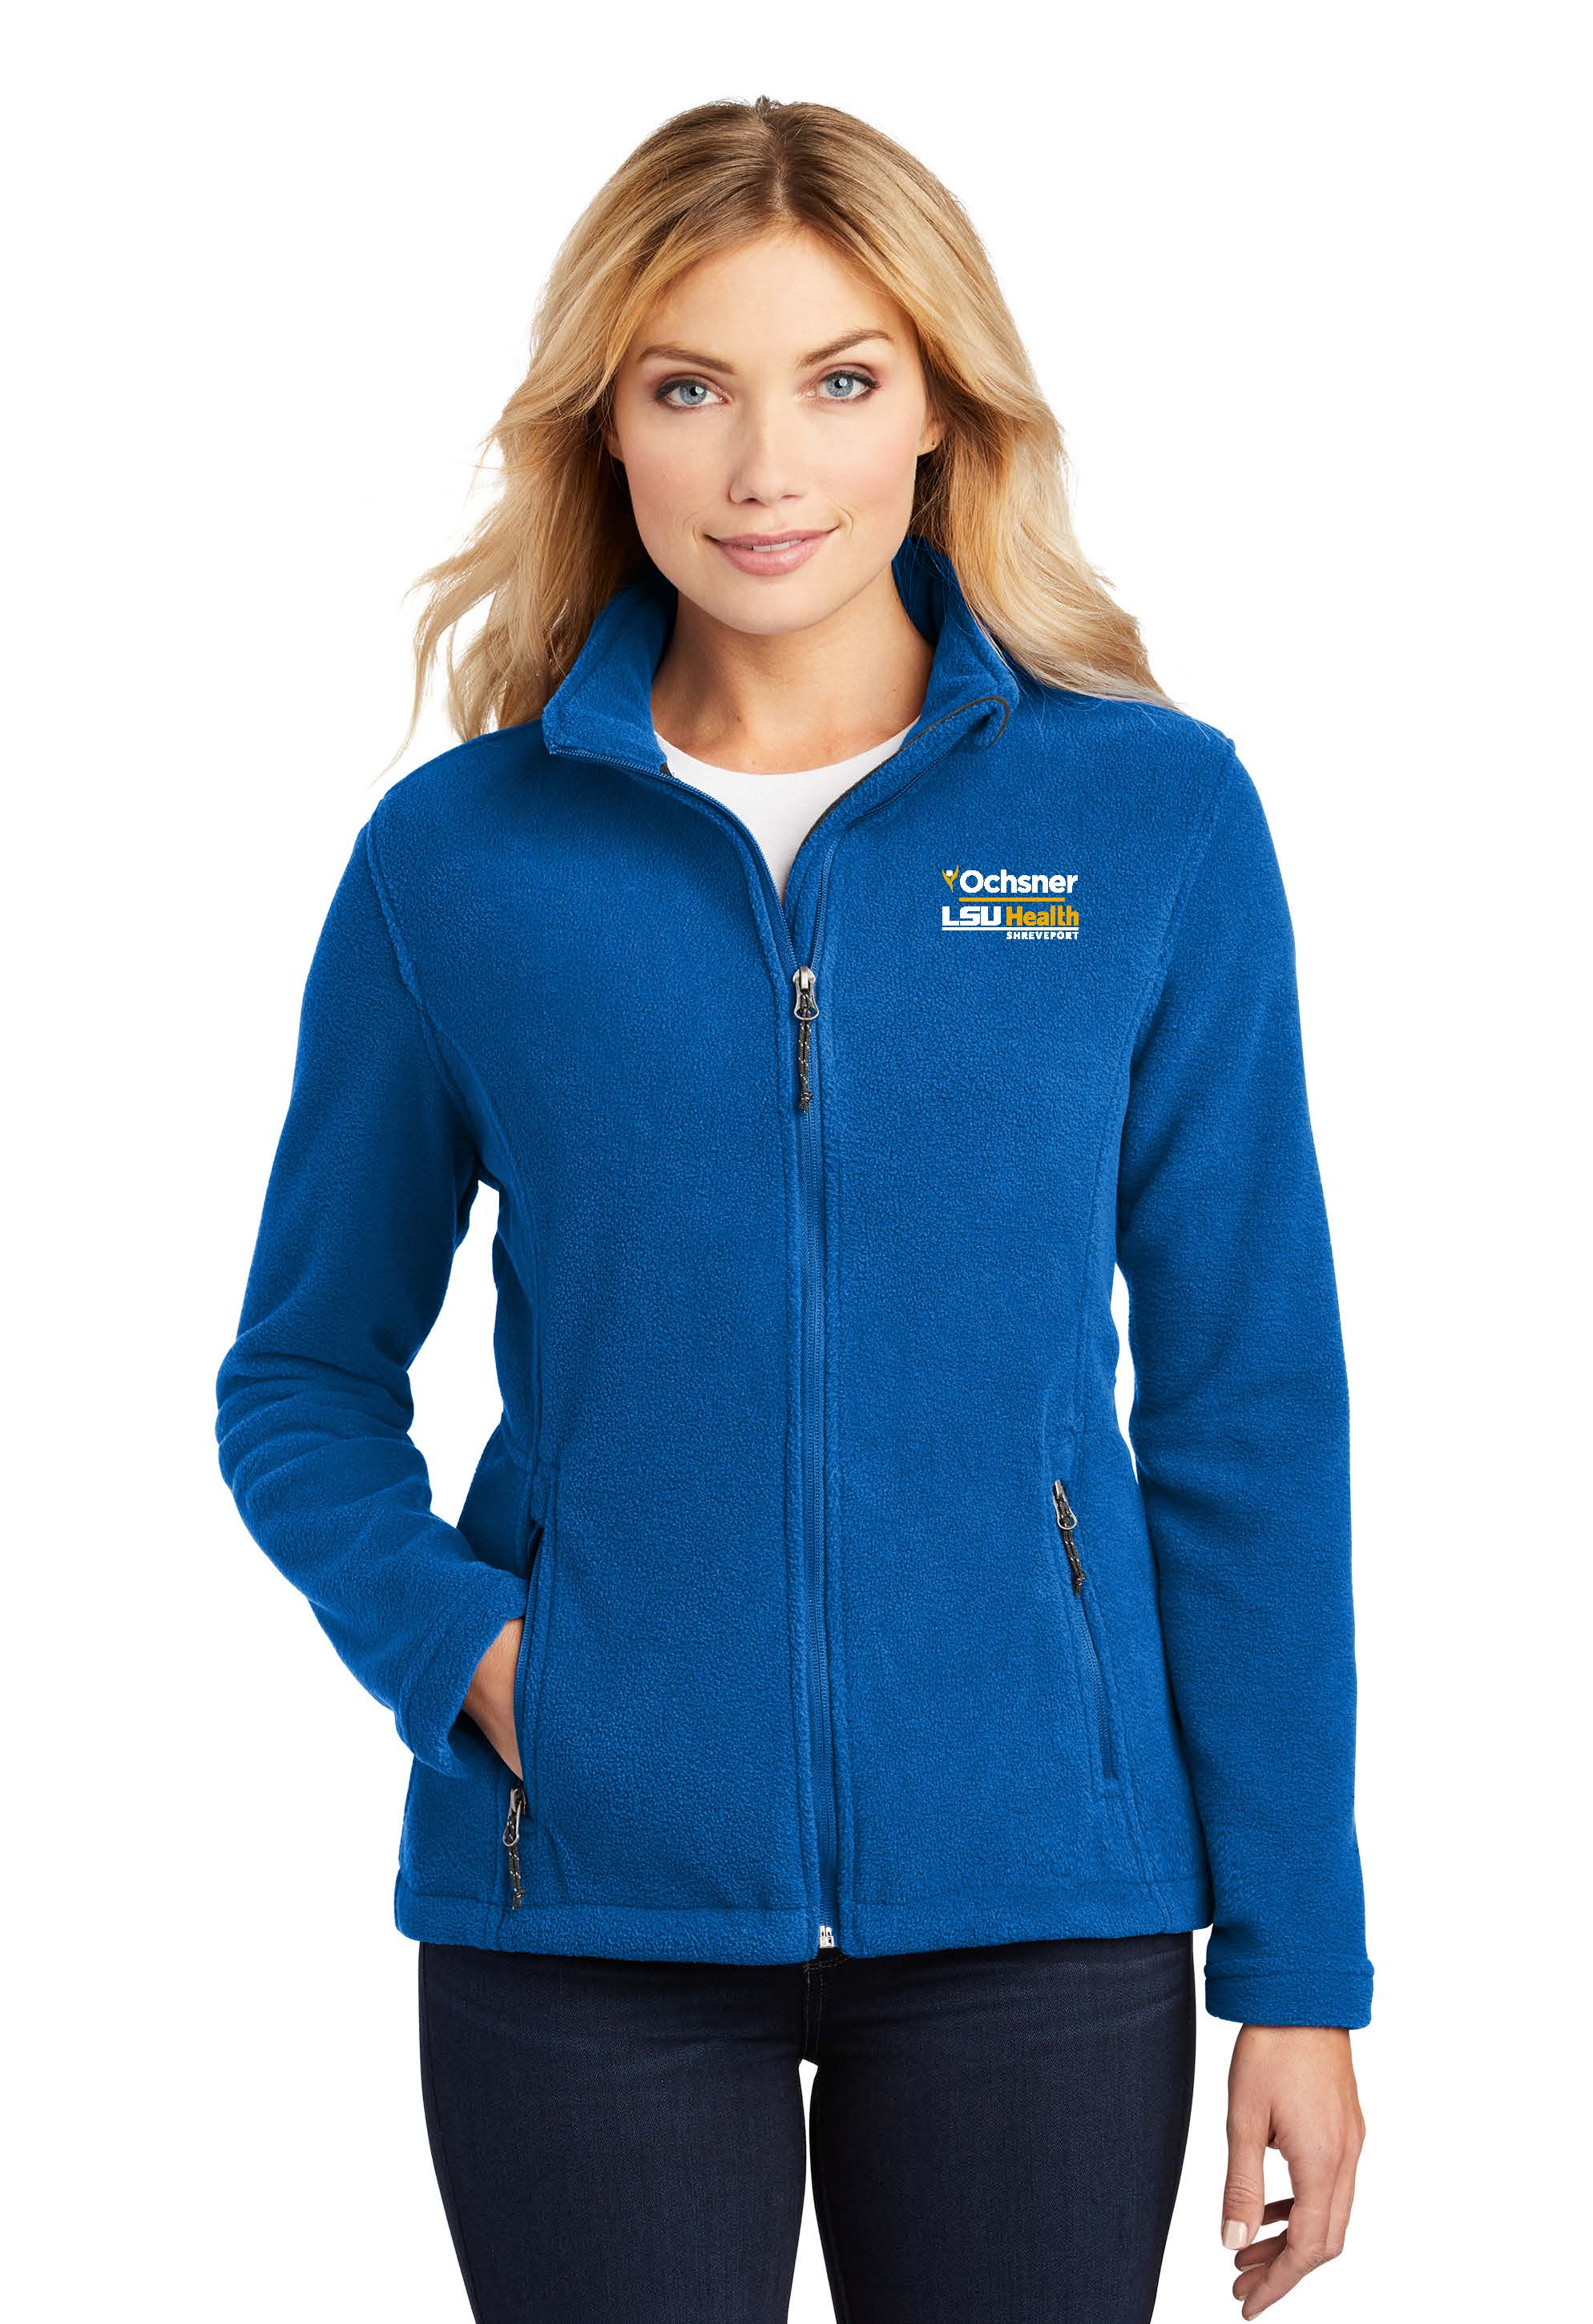 Ochsner LSU Health Shreveport Ladies Value Fleece, Royal Blue, large image number 1